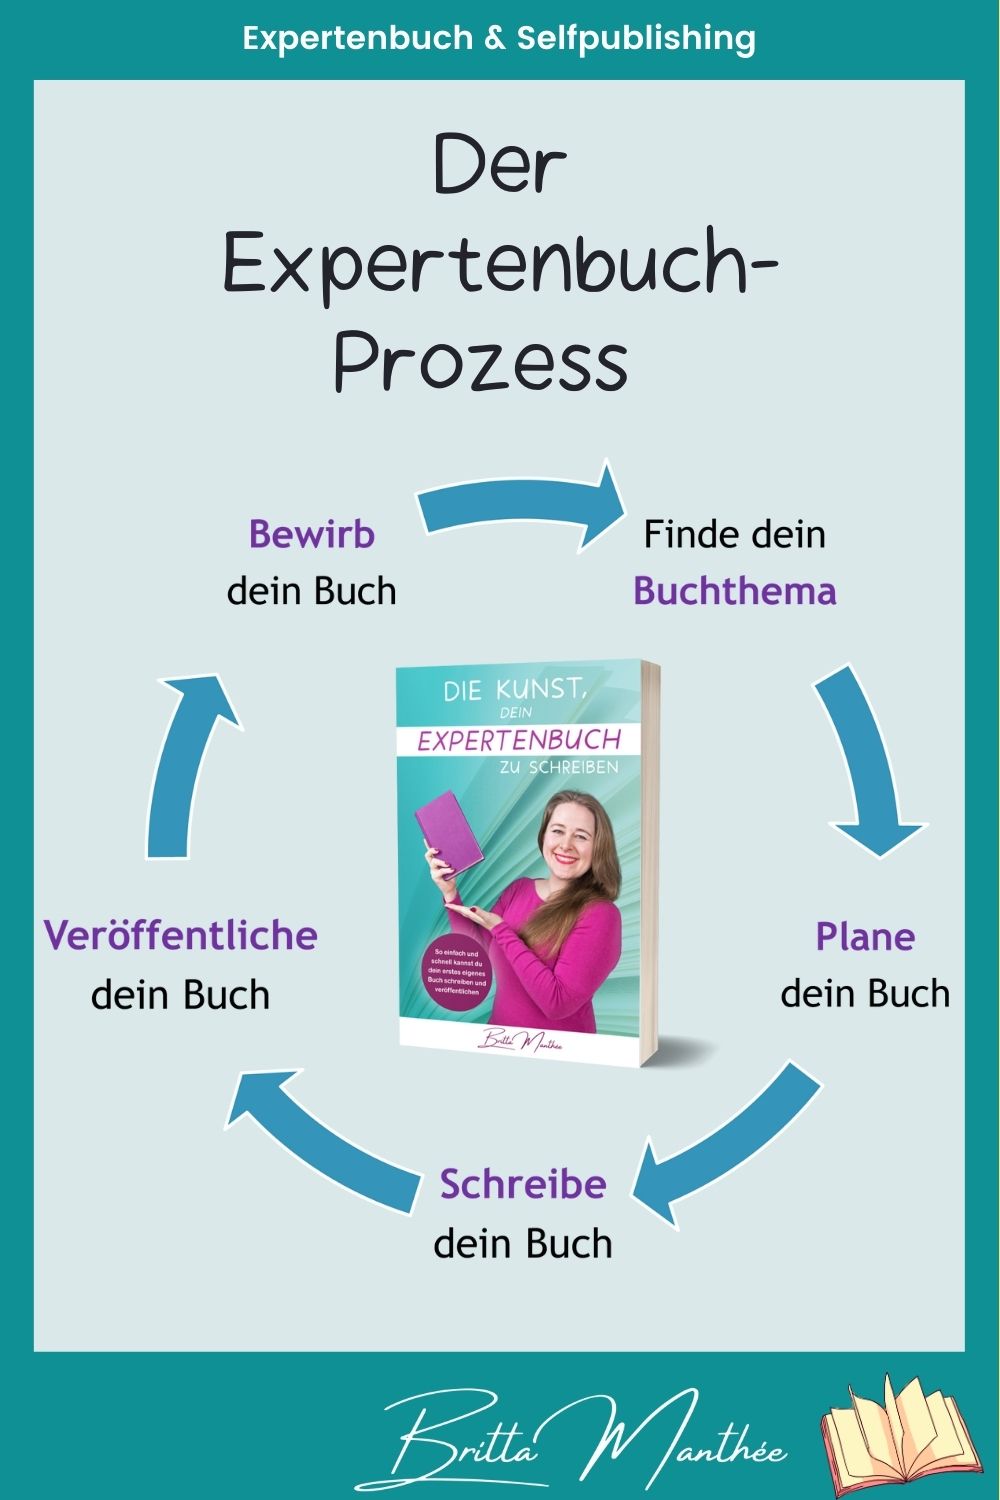 Blog Pin Britta Manthee Expertenbuch-Prozess in 5 Schritten